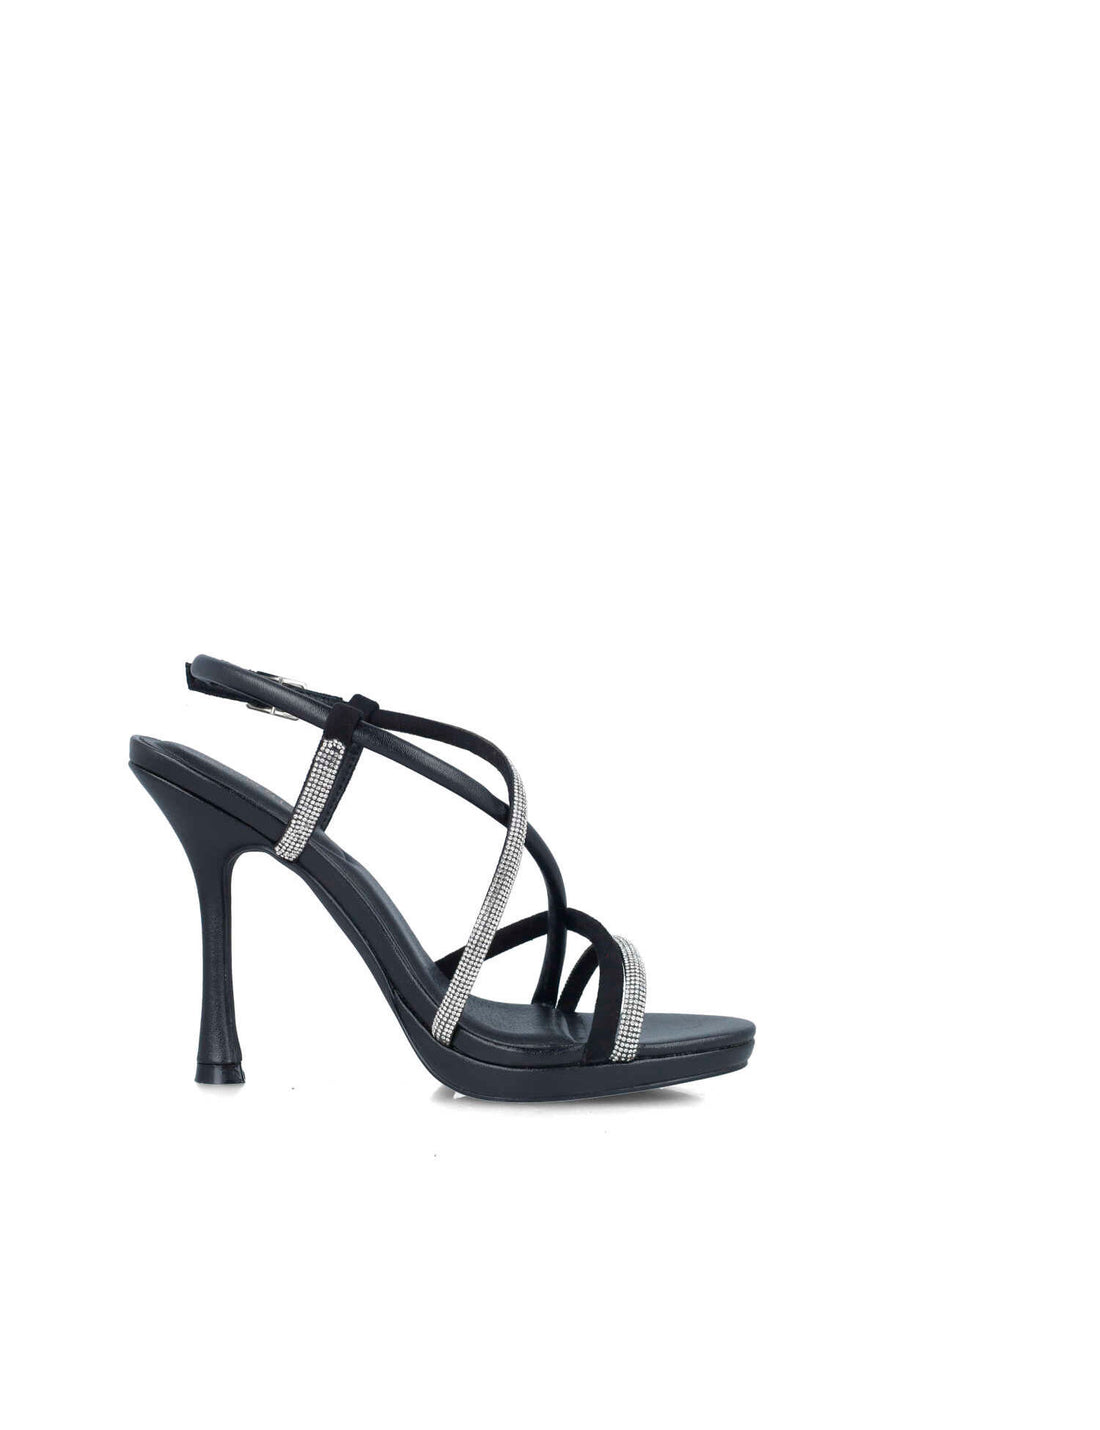 Black High-Heel Sandals With Embellished Straps_24884_01_01